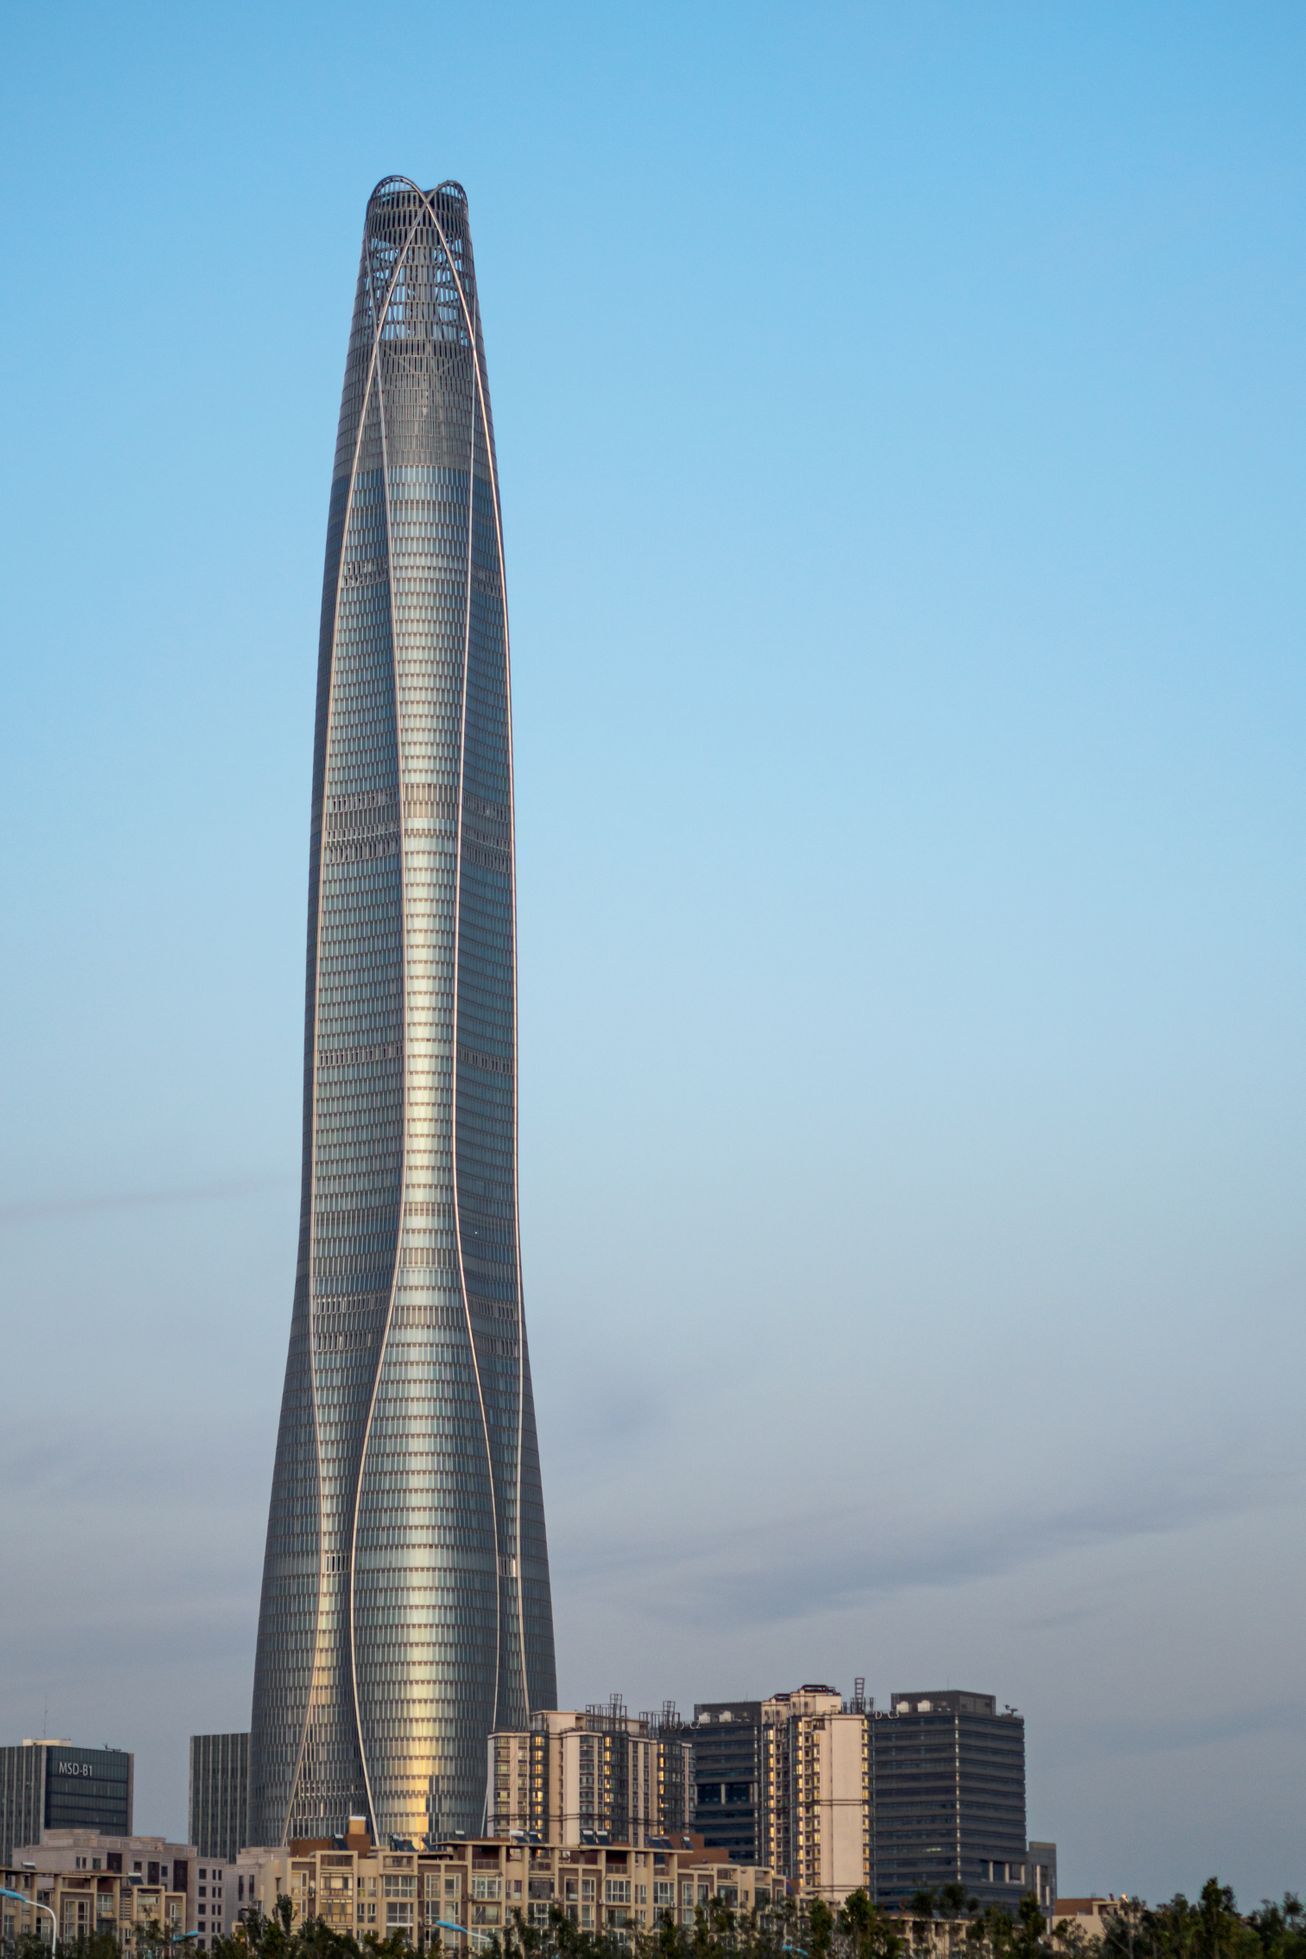 Tianjin CTF Finance Centre / Jednorázové užití / Fotogalerie / Podívejte se na fotografie 10 nejvyšších budov světa